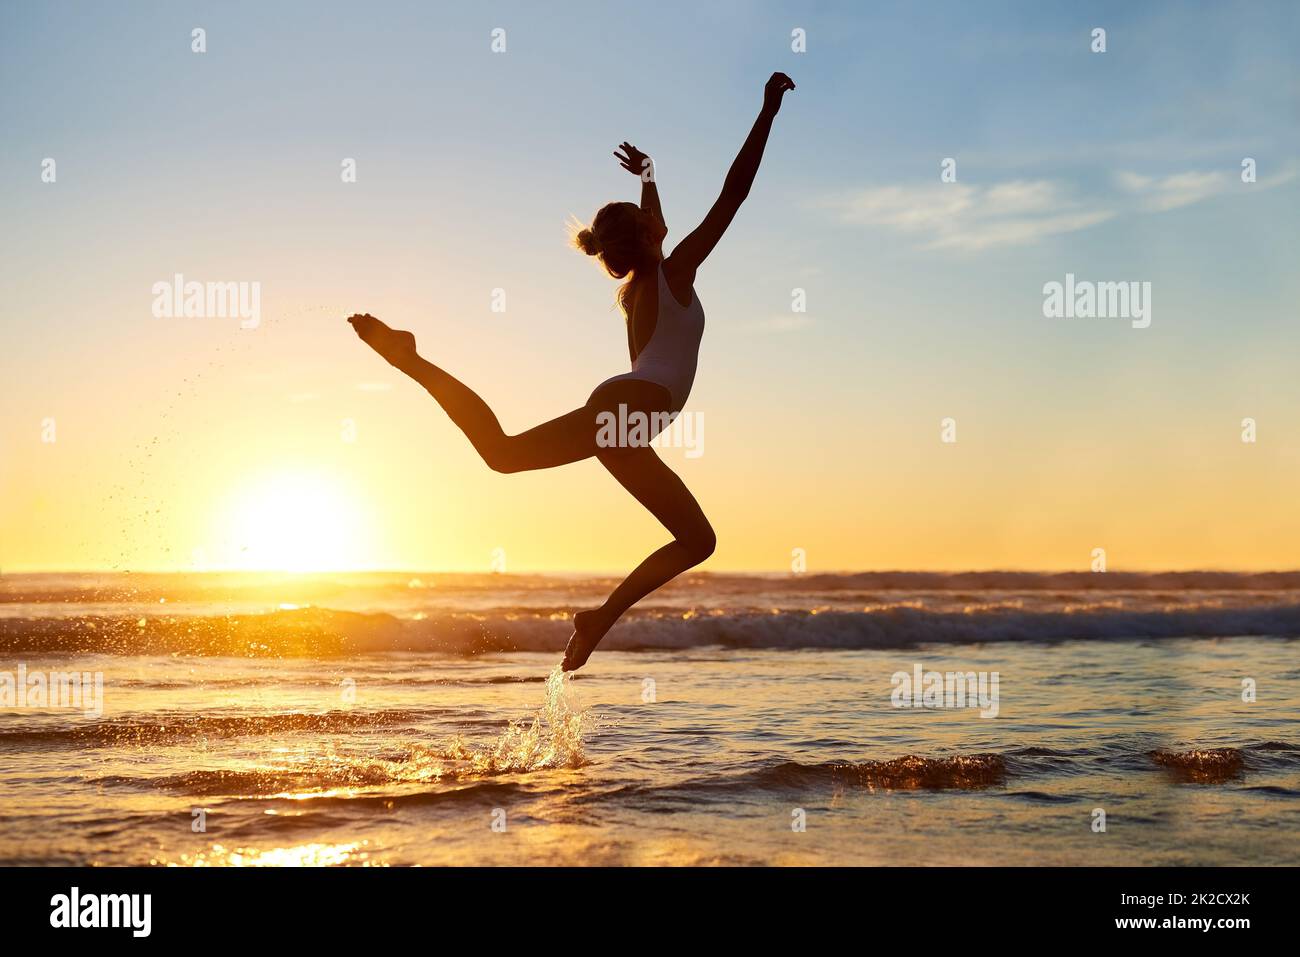 Du bist frei, wer auch immer du bist. Aufnahme einer jungen Frau, die gegen einen wunderschönen Sonnenuntergang am Strand in die Luft springt. Stockfoto